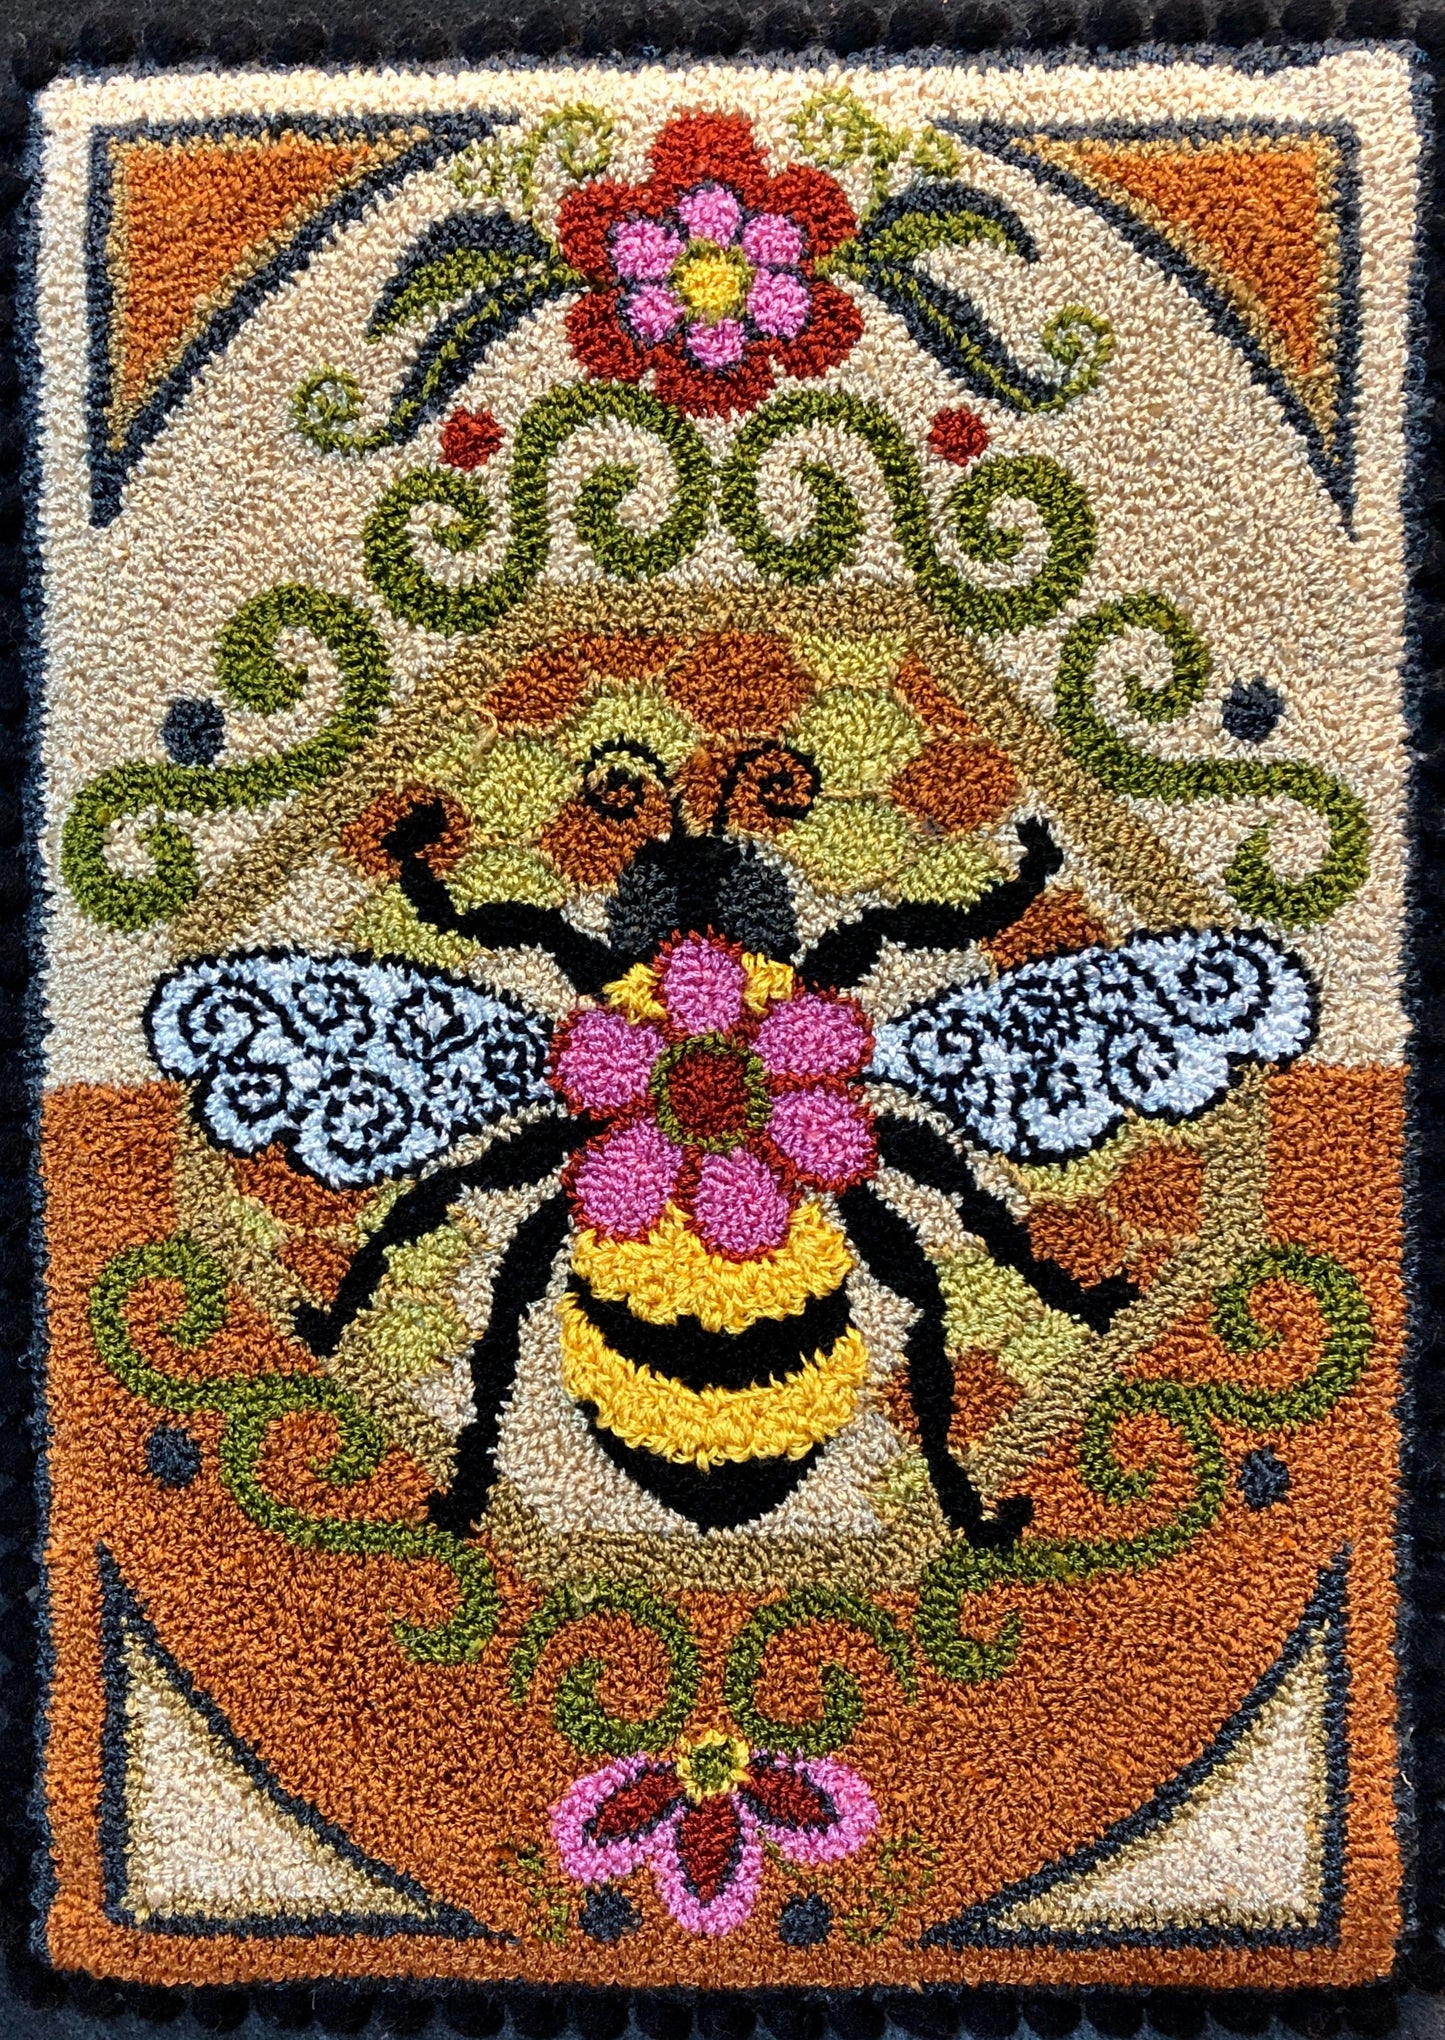 Bumblebee I- Rug Hooking PDF Digital Download Pattern, By Orphaned Wool